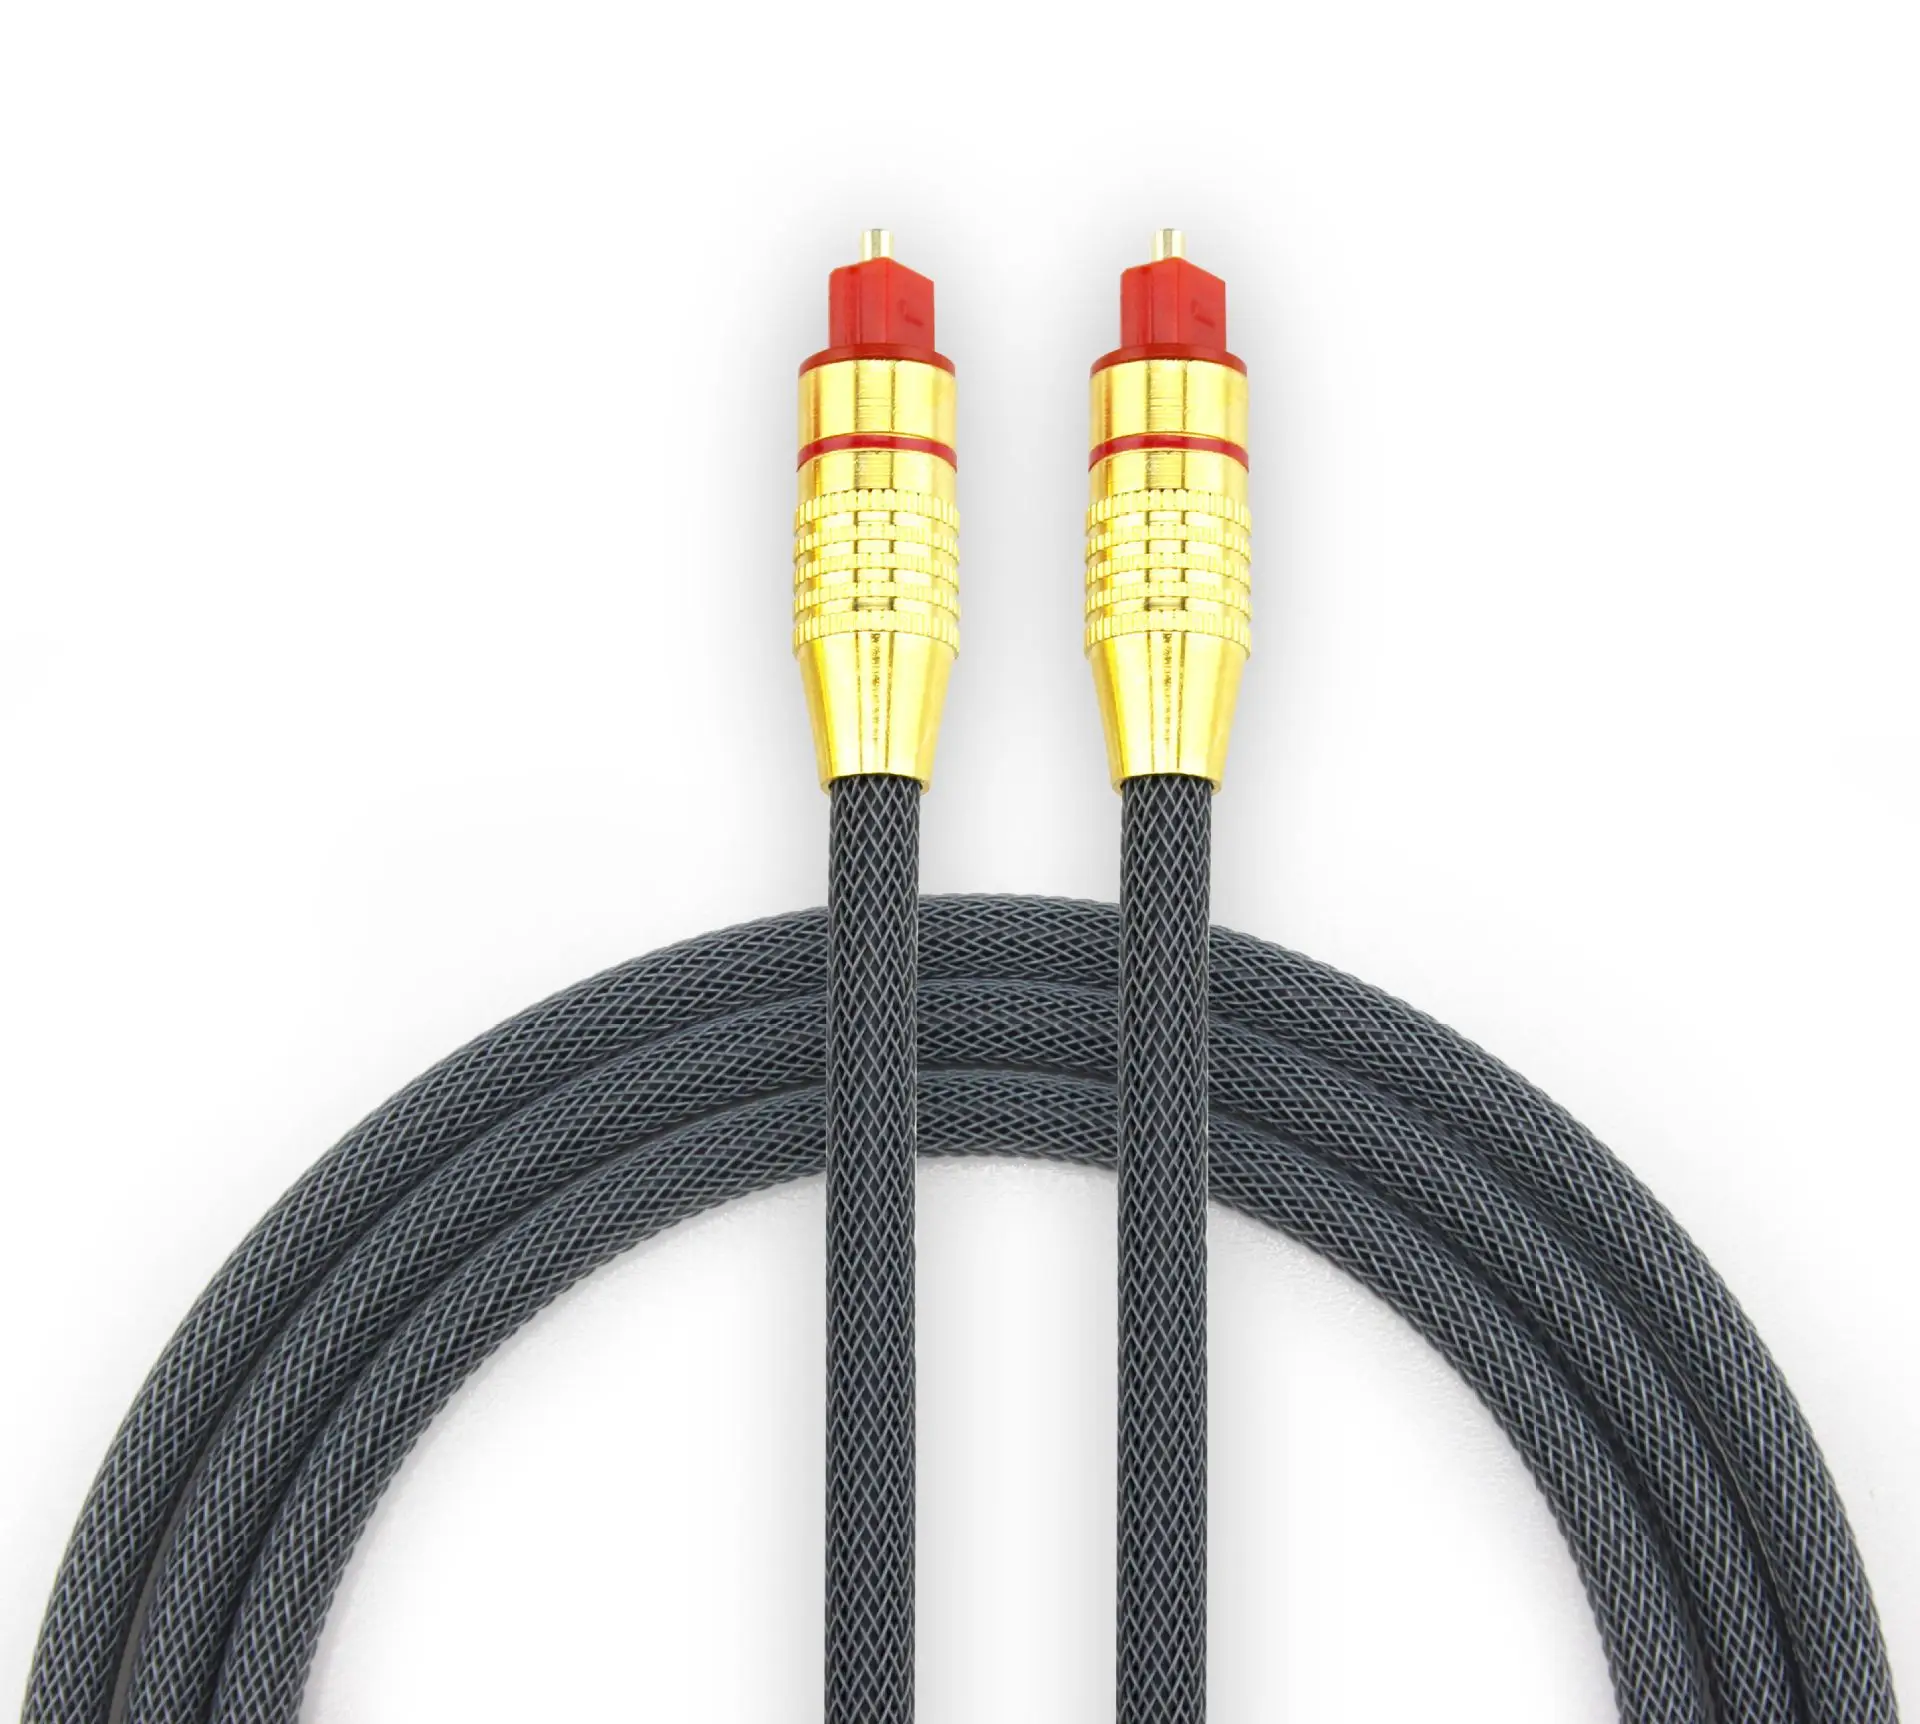 SPDIF Fiber Optisk Toslink Kabel-Audio-1m 2m 8m 10m for TV-boksen PS4 højttalerkabel Soundbar Forstærker, Subwoofer